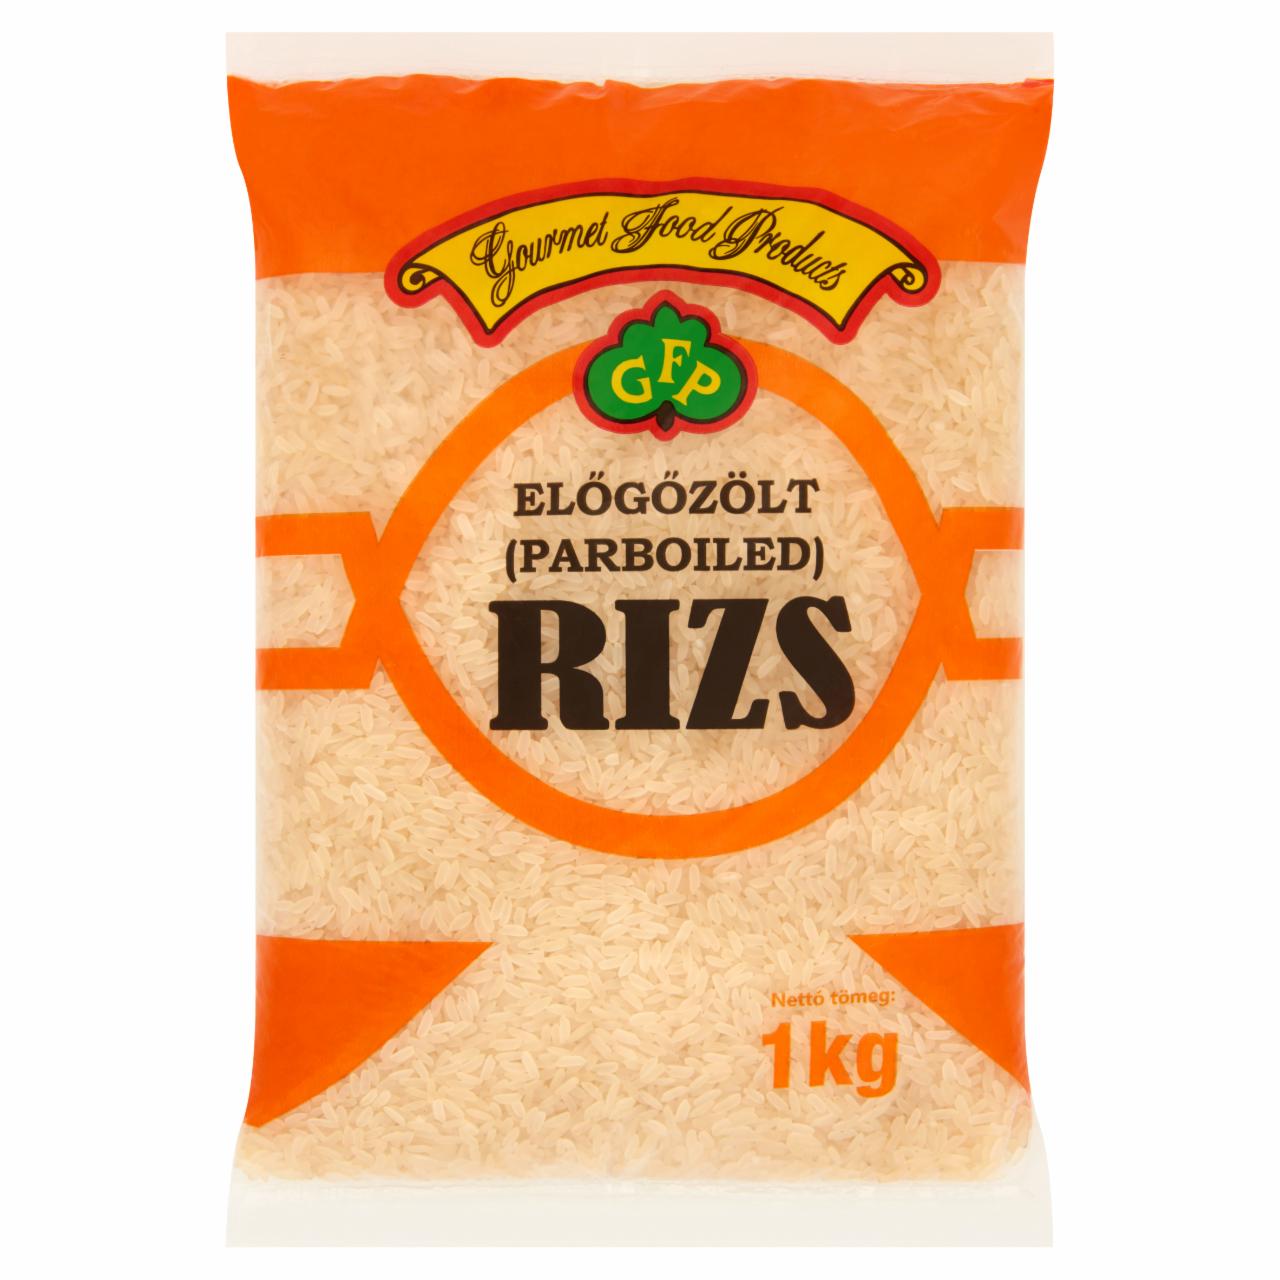 Képek - GFP előgőzőlt rizs 1 kg